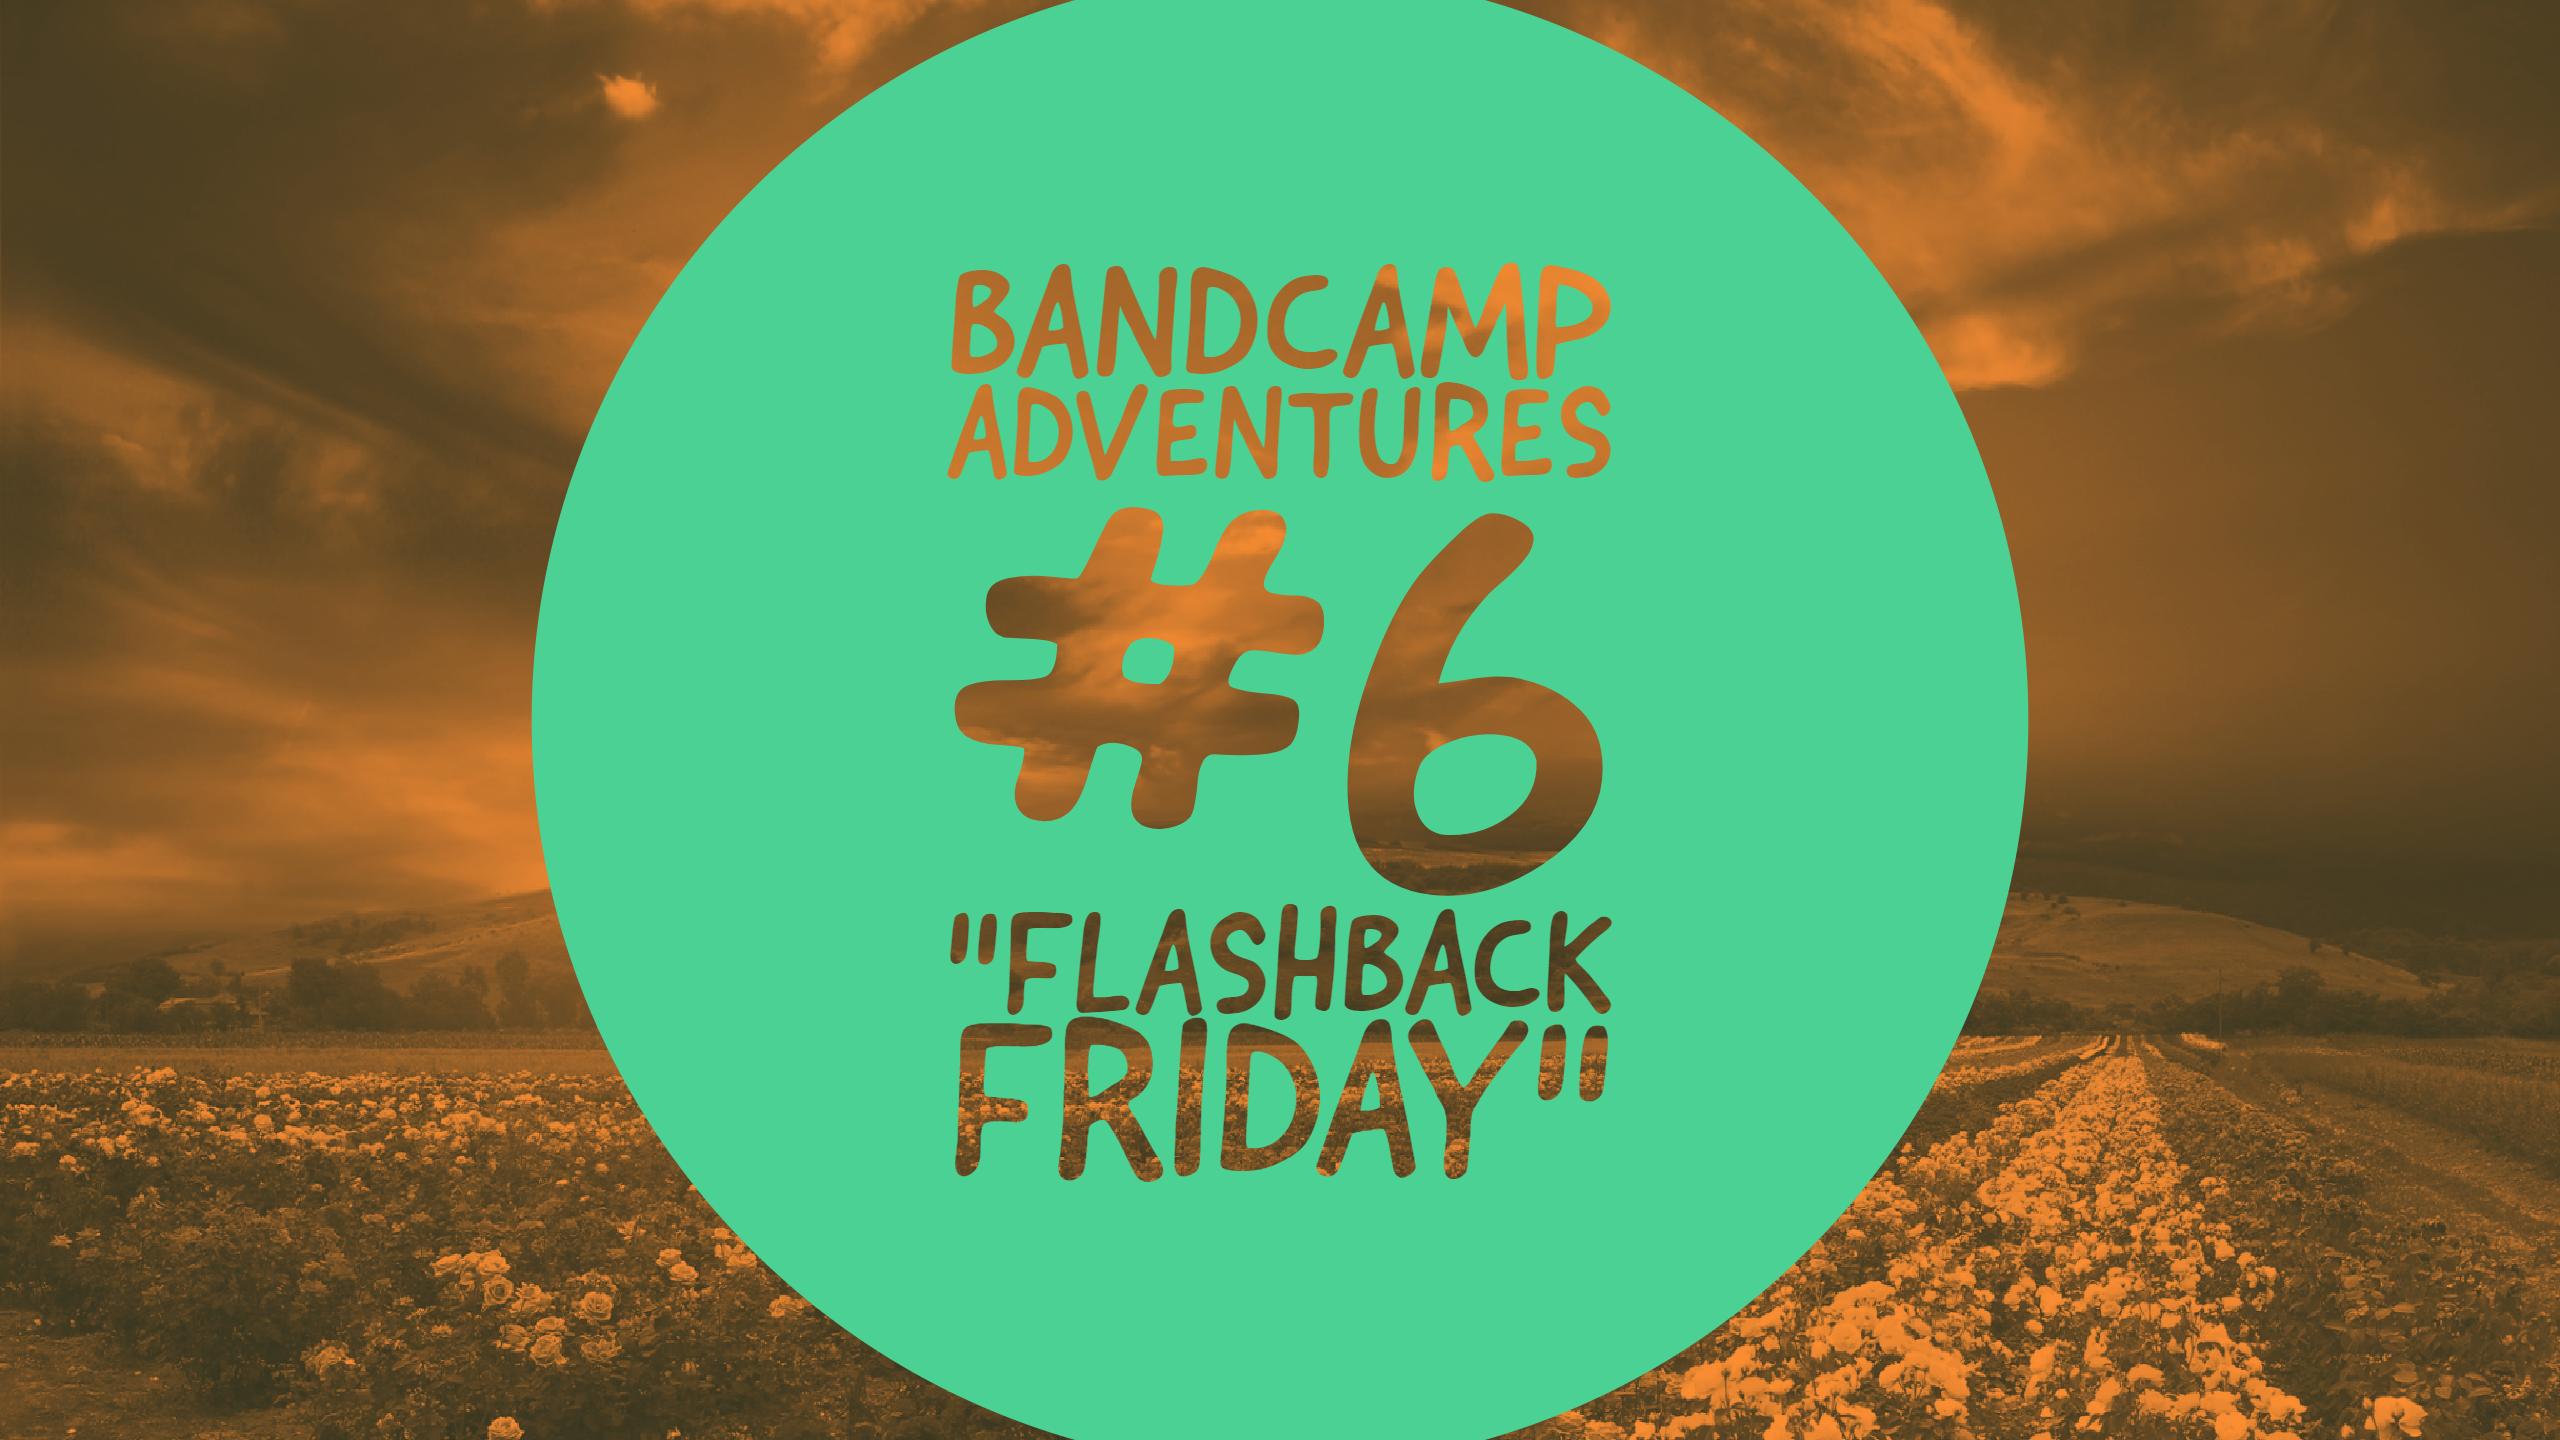 Bandcamp Adventures #6: “Flashback Friday”